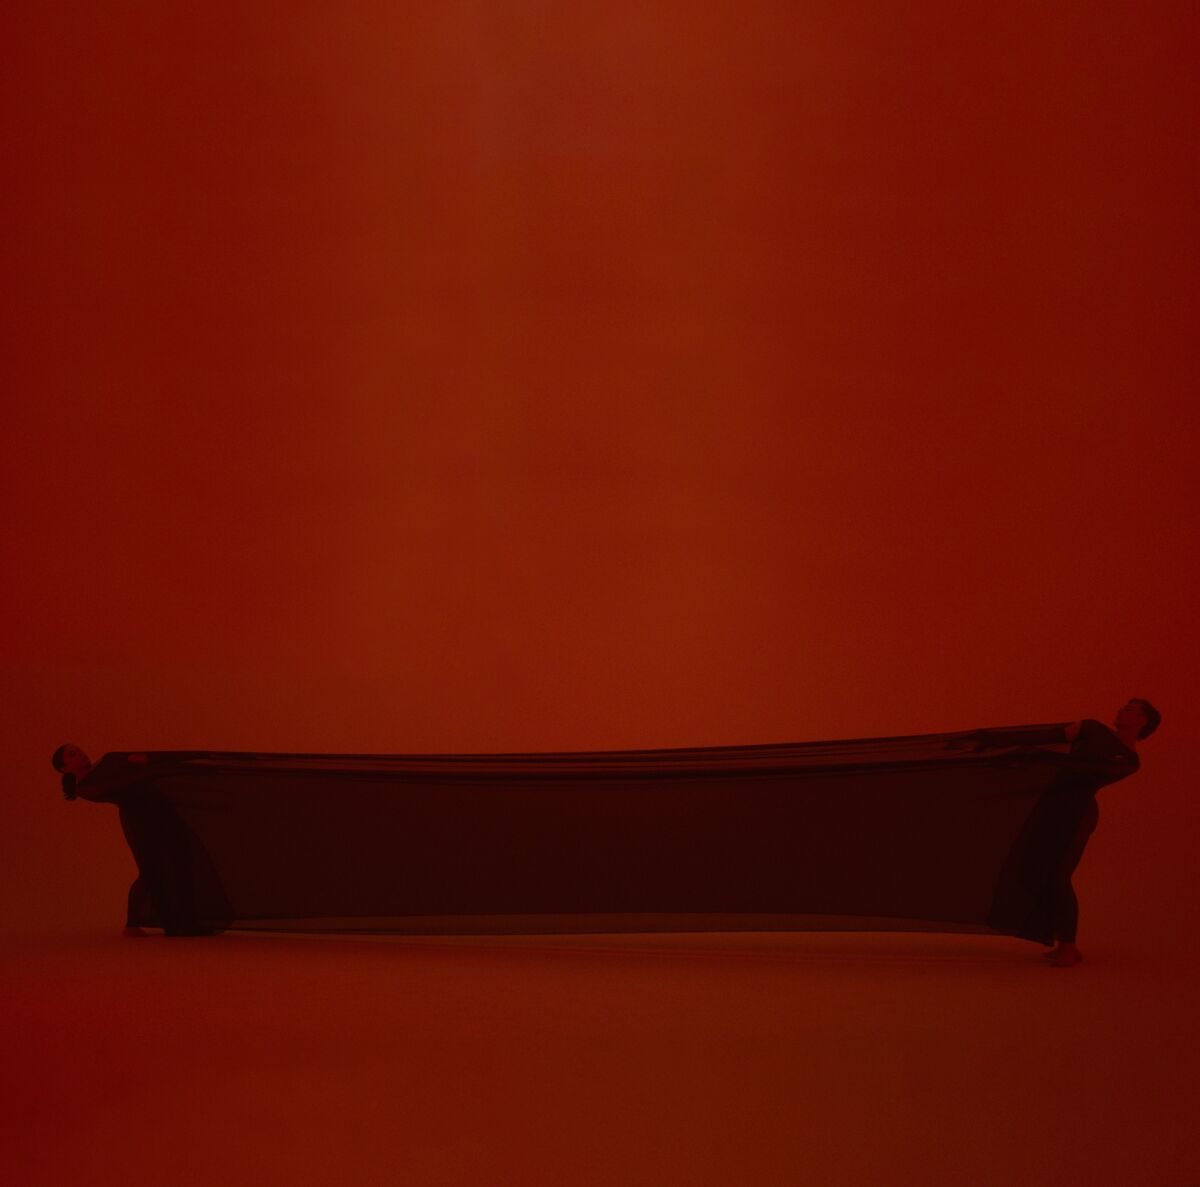 A bench in dark-red lighting 